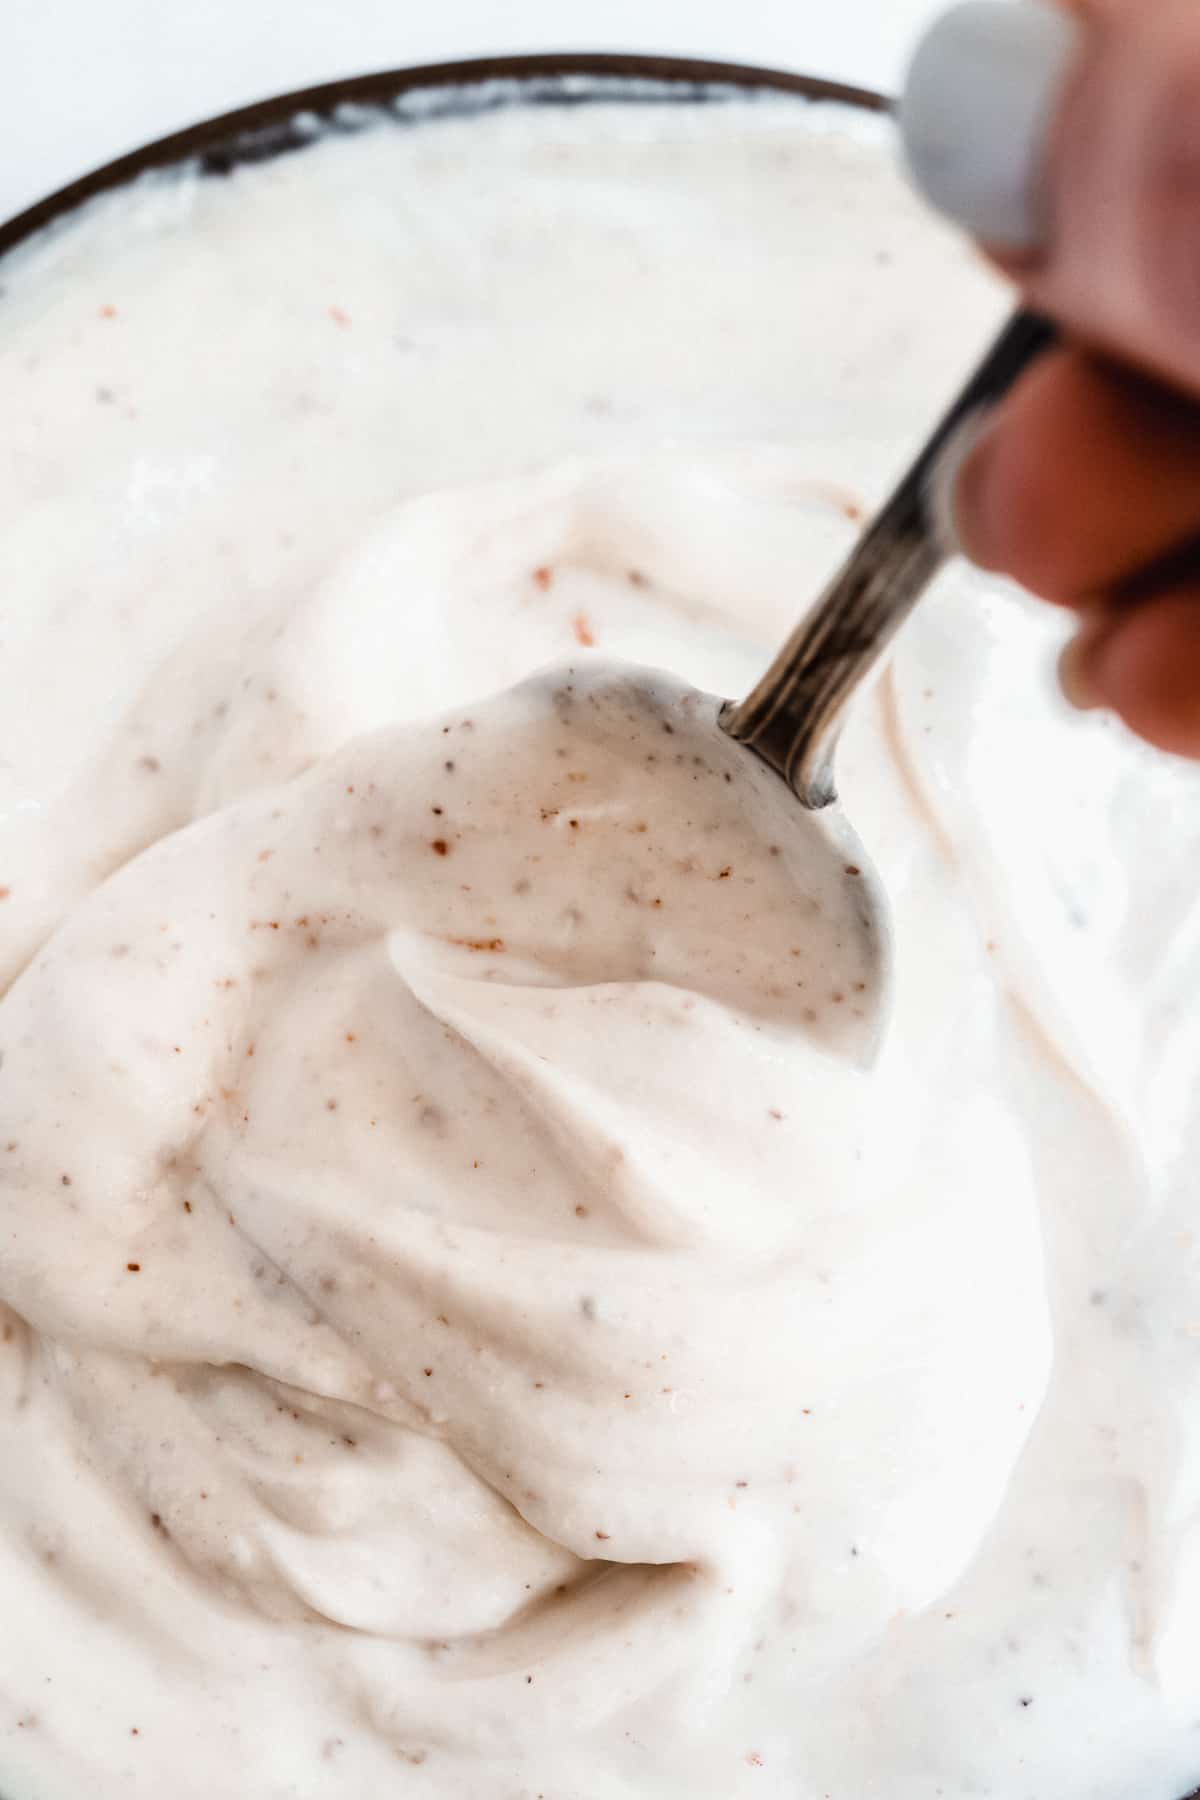 Spoon in greek yogurt dip with swirls.